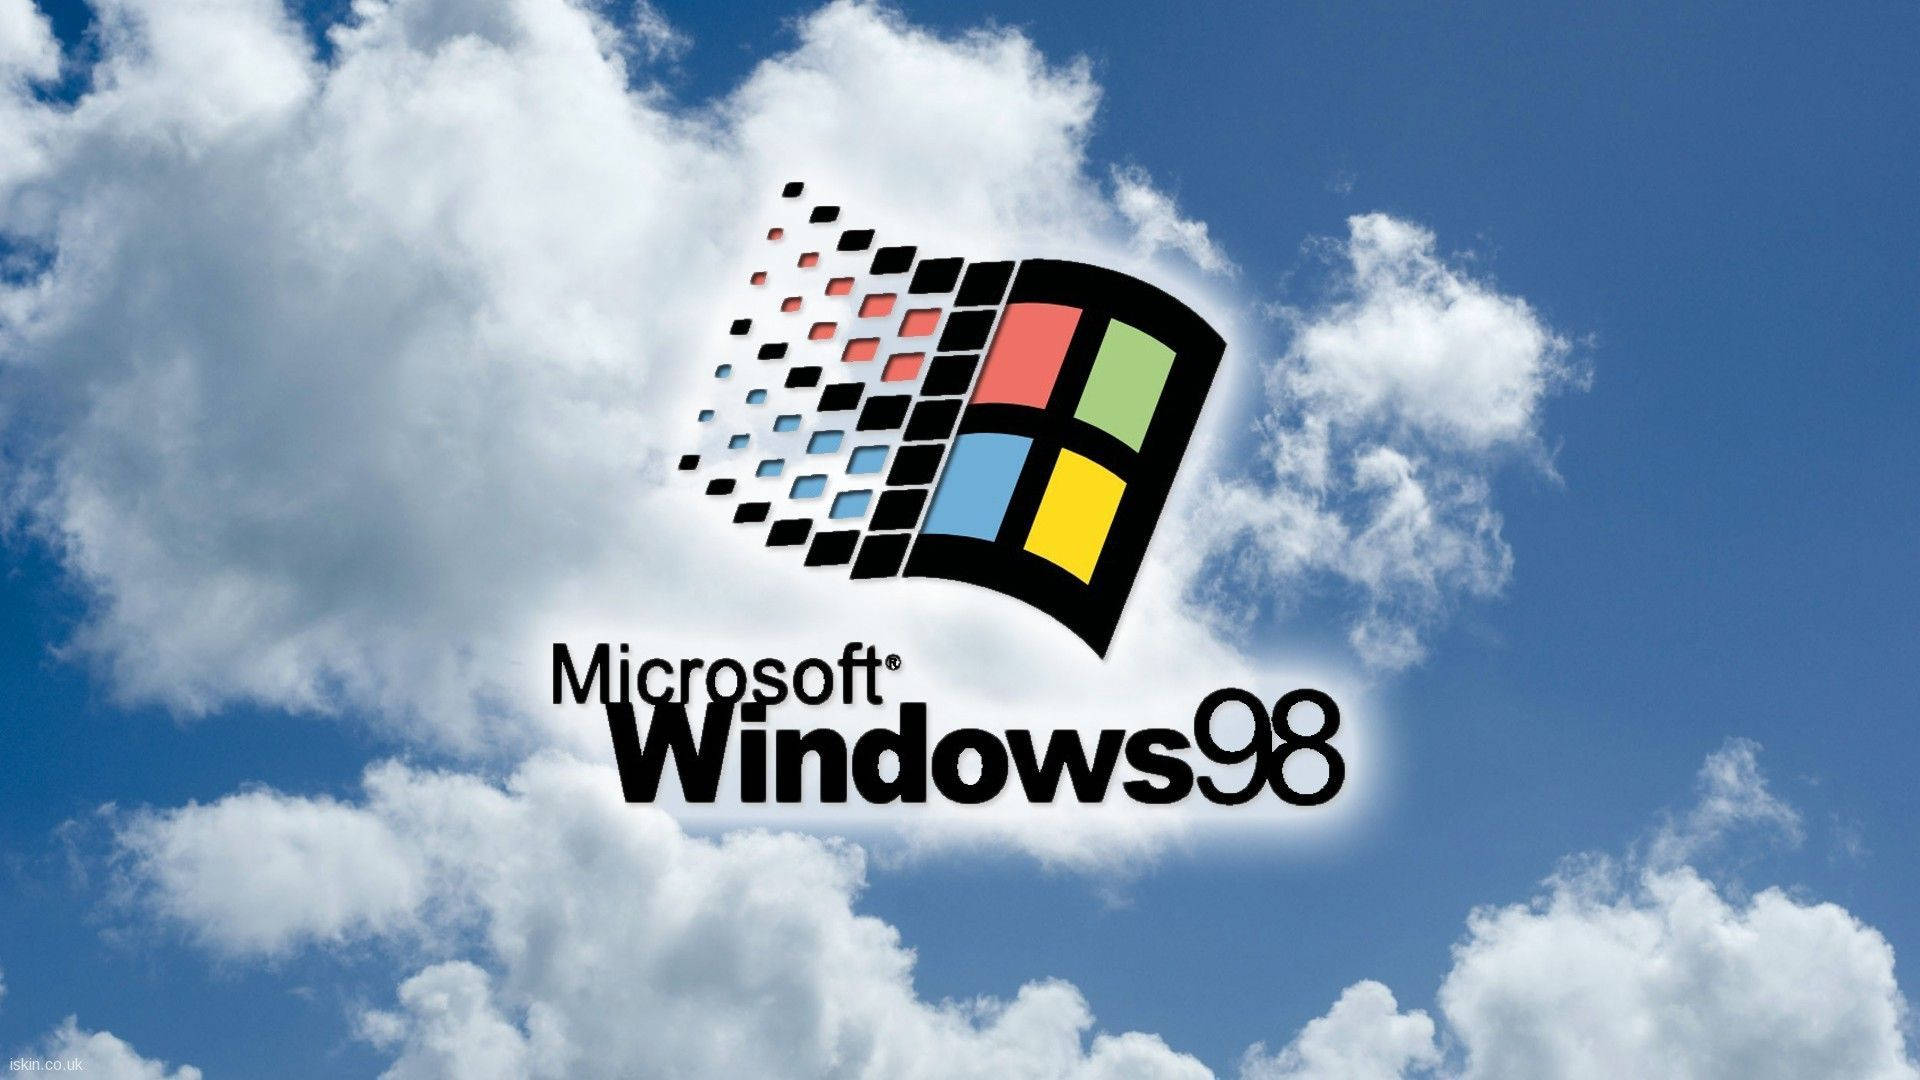 Đừng bỏ lỡ cơ hội tải miễn phí những hình nền Windows 98 đẹp nhất chỉ có tại đây. Tô điểm cho màn hình máy tính của bạn với những hình ảnh đẹp mắt và lịch sử.